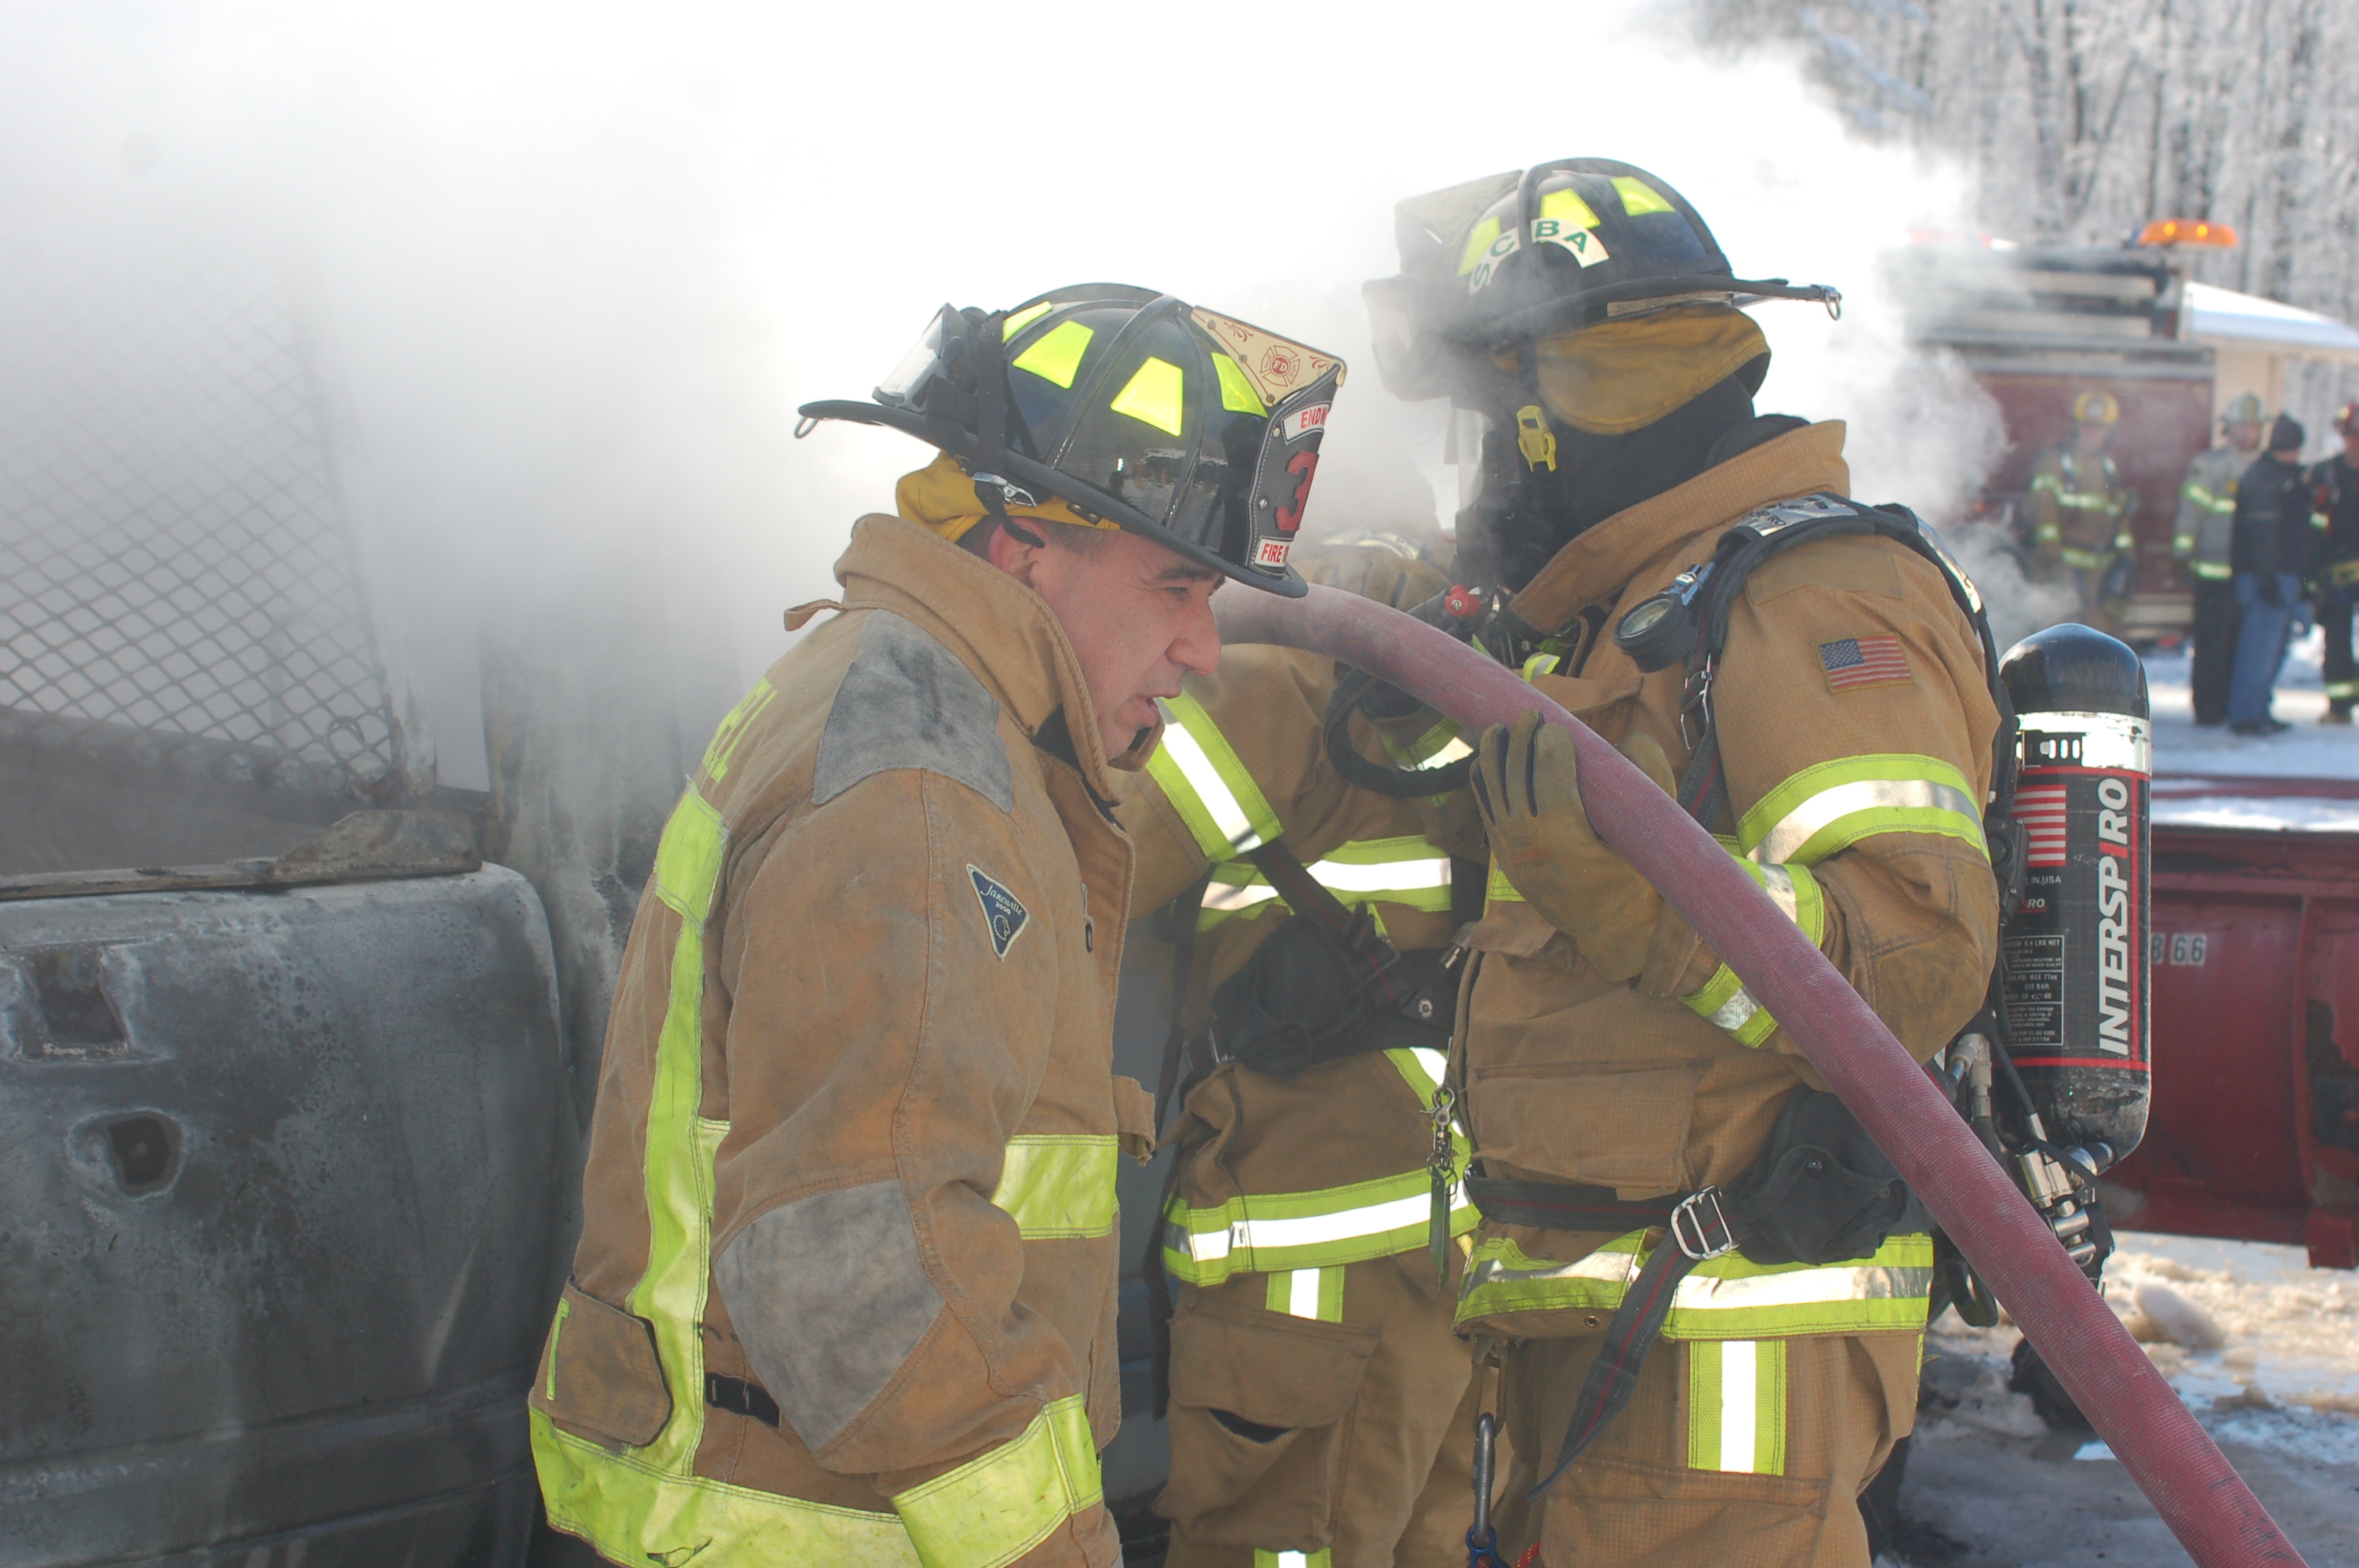 02-08-11  Response - Truck Fire - Highland Park